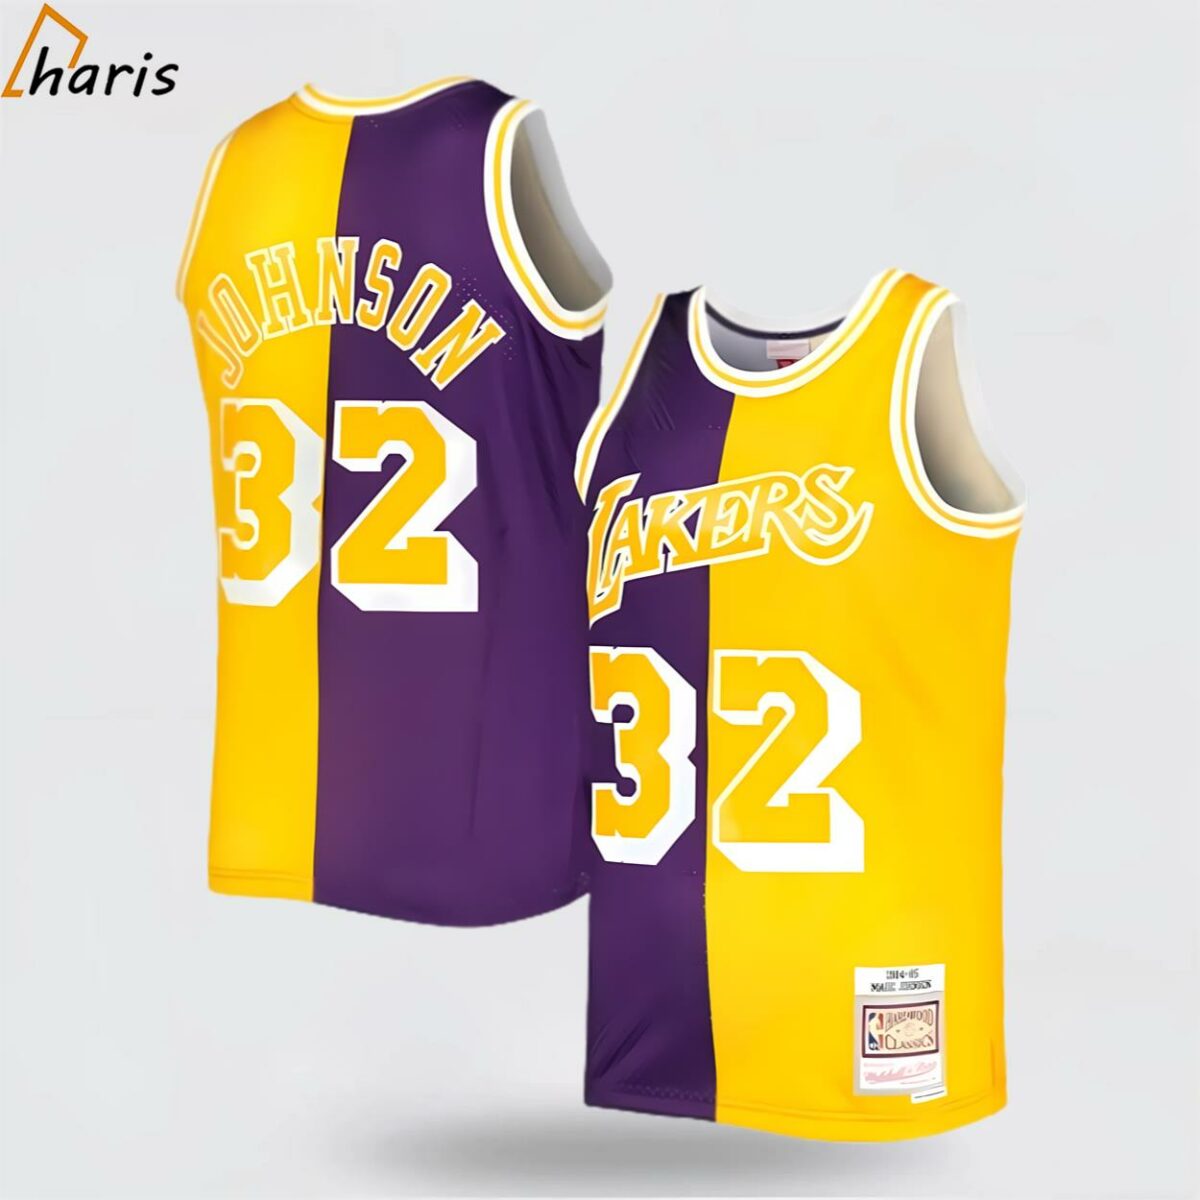 Johnson Los Angeles Lakers Swingman Jersey Purple Gold 1 jersey